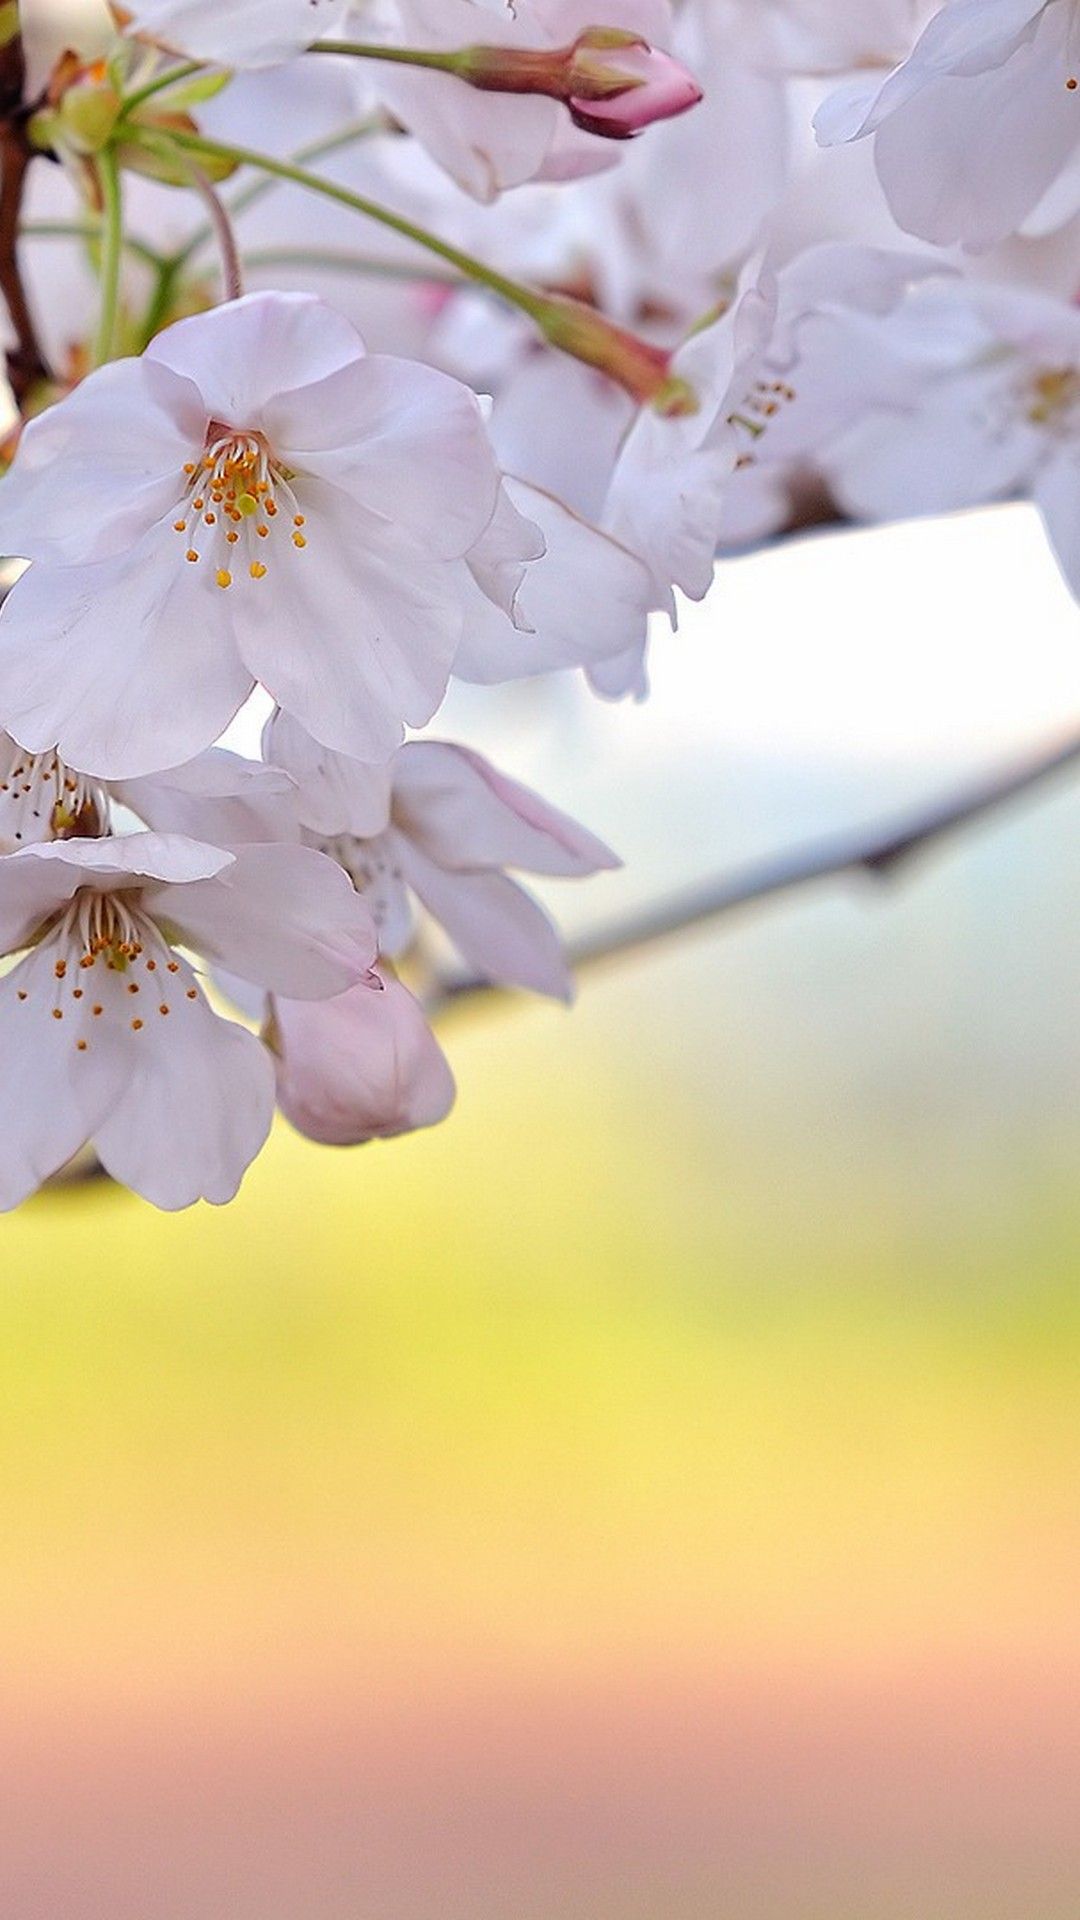 استوری آرامش بخش گلهای بهاری